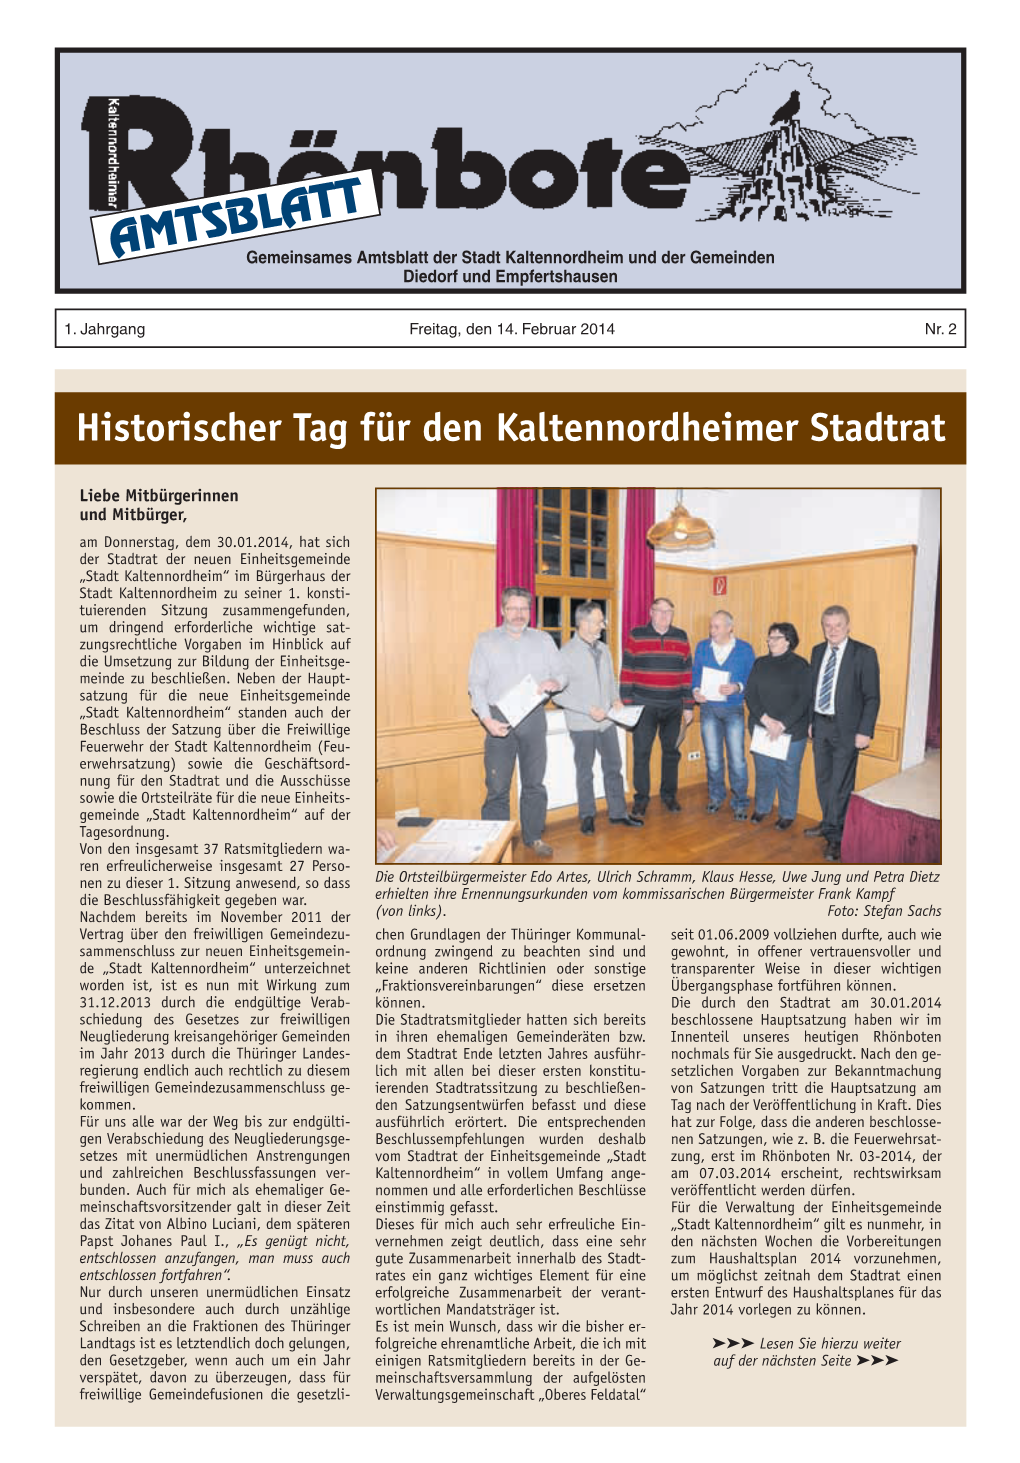 Amtsblattgemeinsames Amtsblatt Der Stadt Kaltennordheim Und Der Gemeinden Diedorf Und Empfertshausen